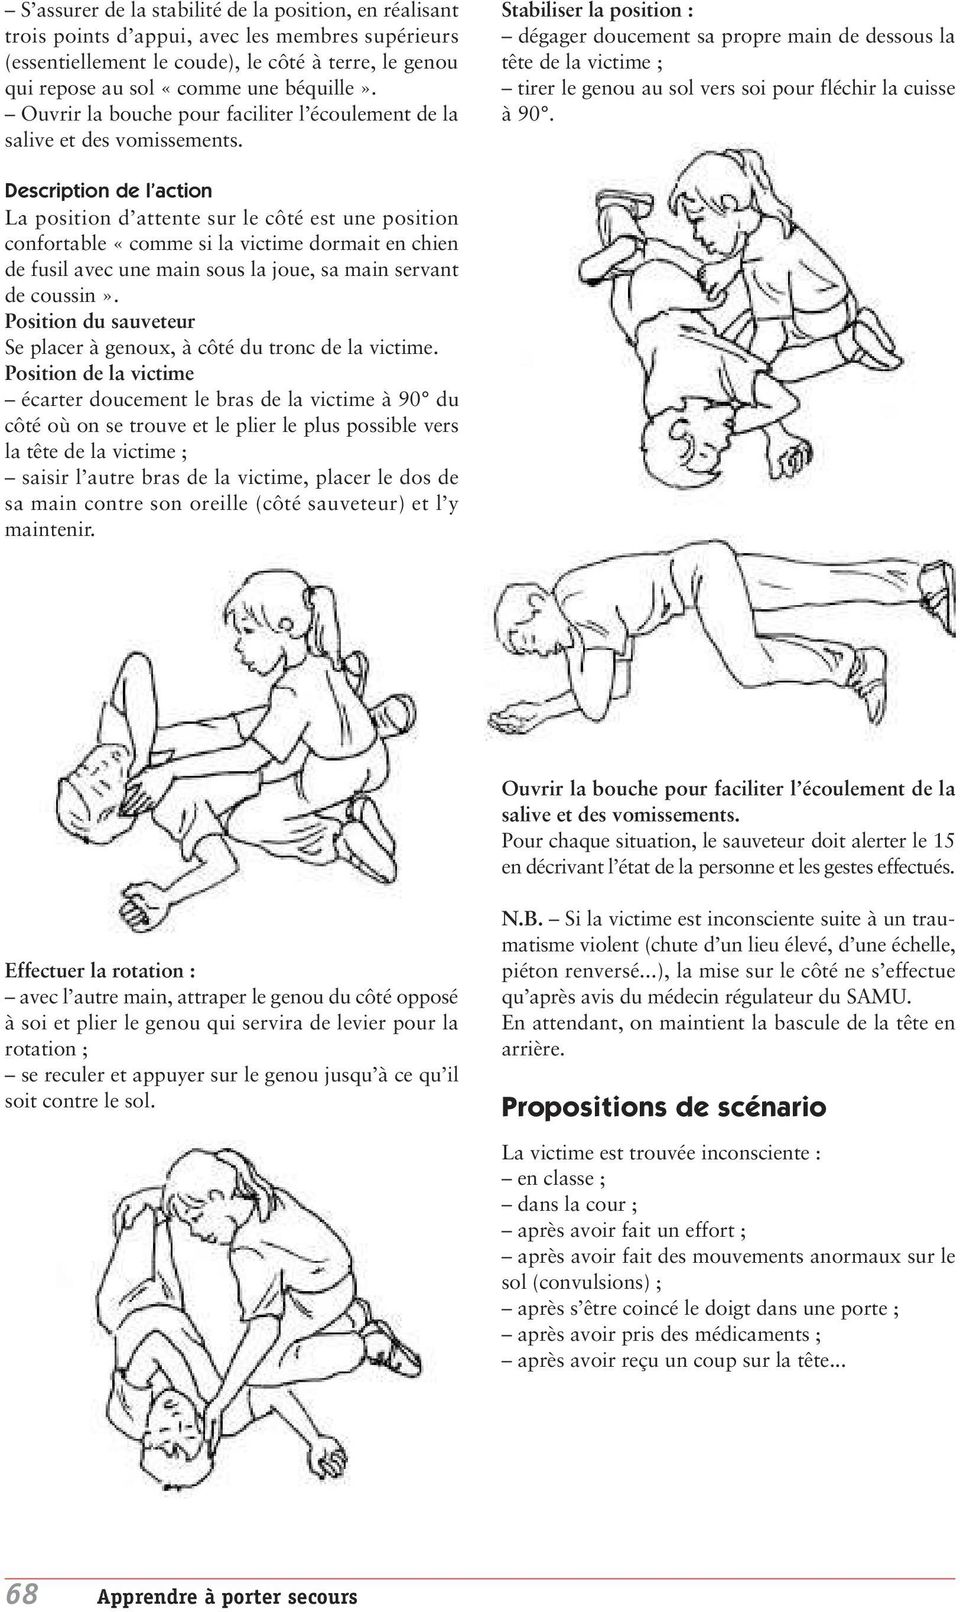 Stabiliser la position : dégager doucement sa propre main de dessous la tête de la victime ; tirer le genou au sol vers soi pour fléchir la cuisse à 90.